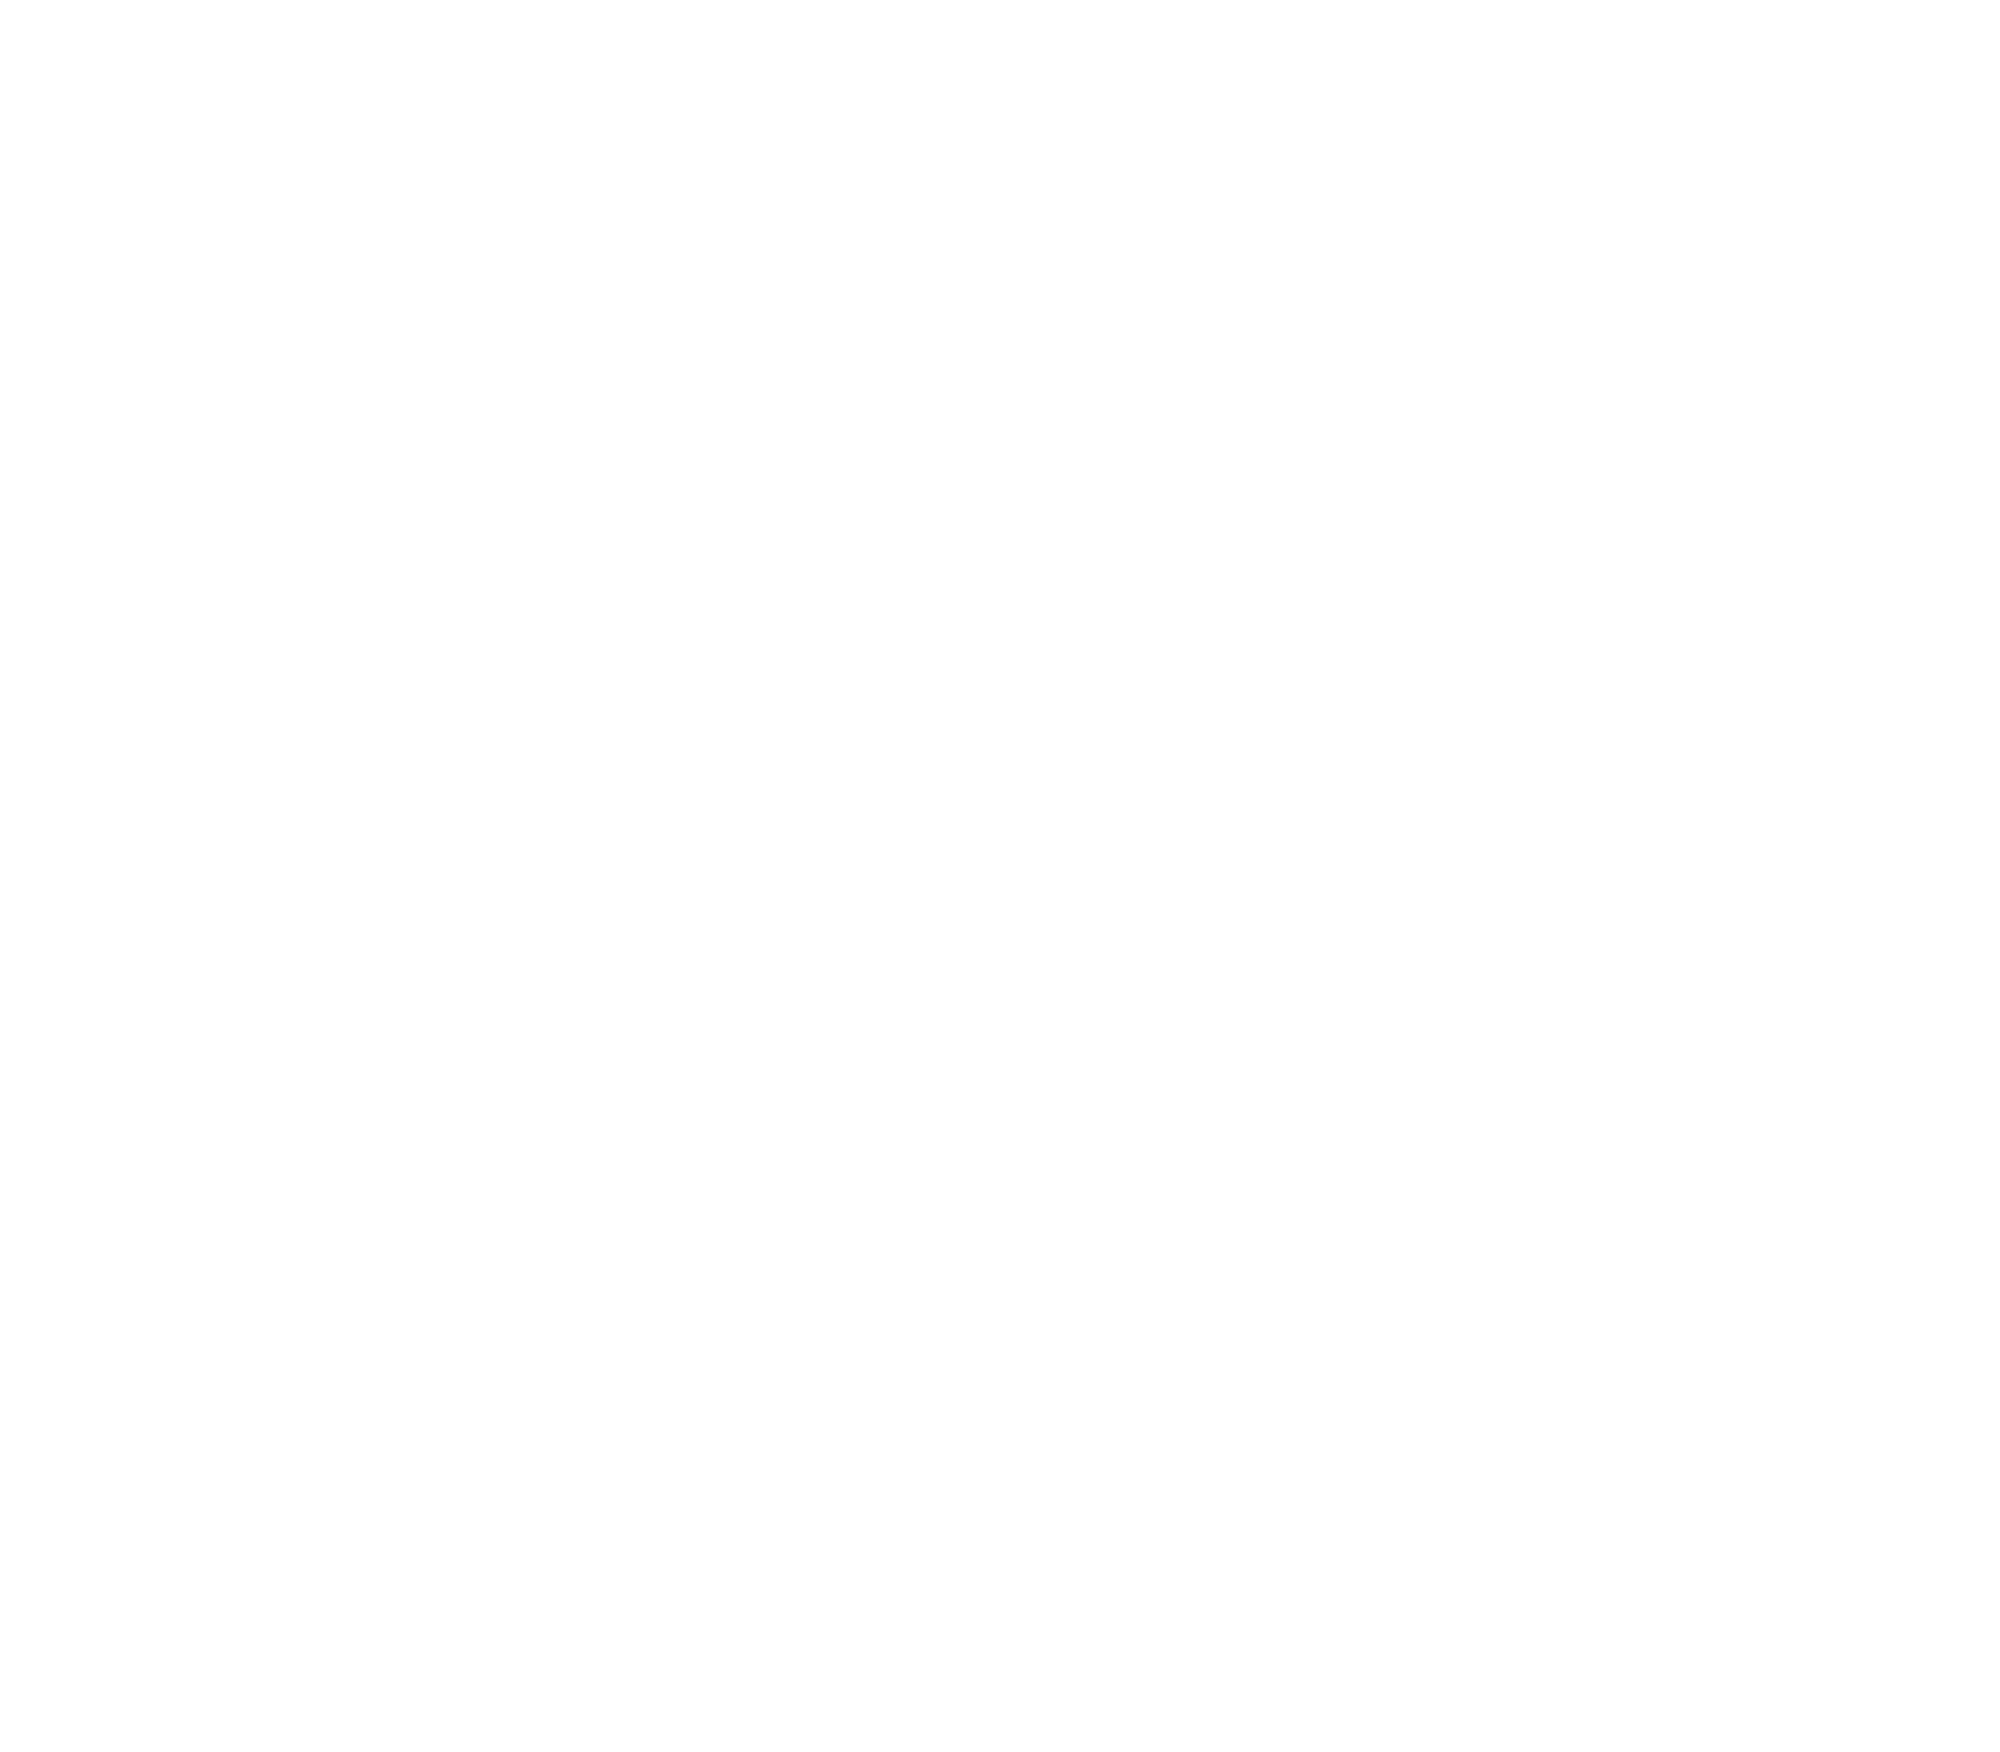 Campus Internacional de Blockchain